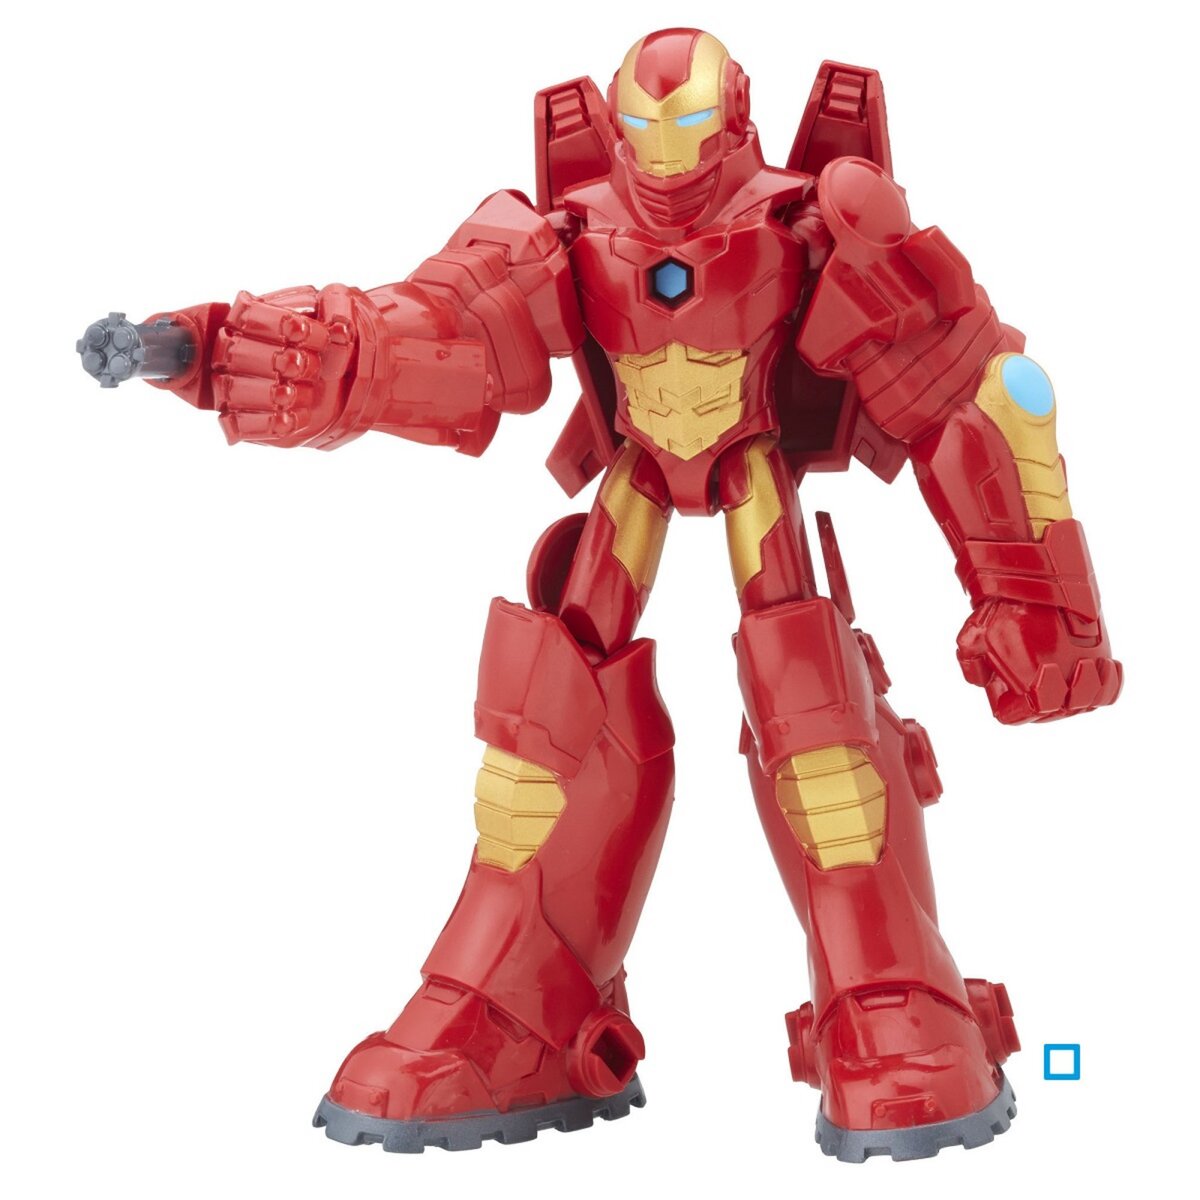 HASBRO Figurines deluxe 15cm - The Avengers - Iron Man